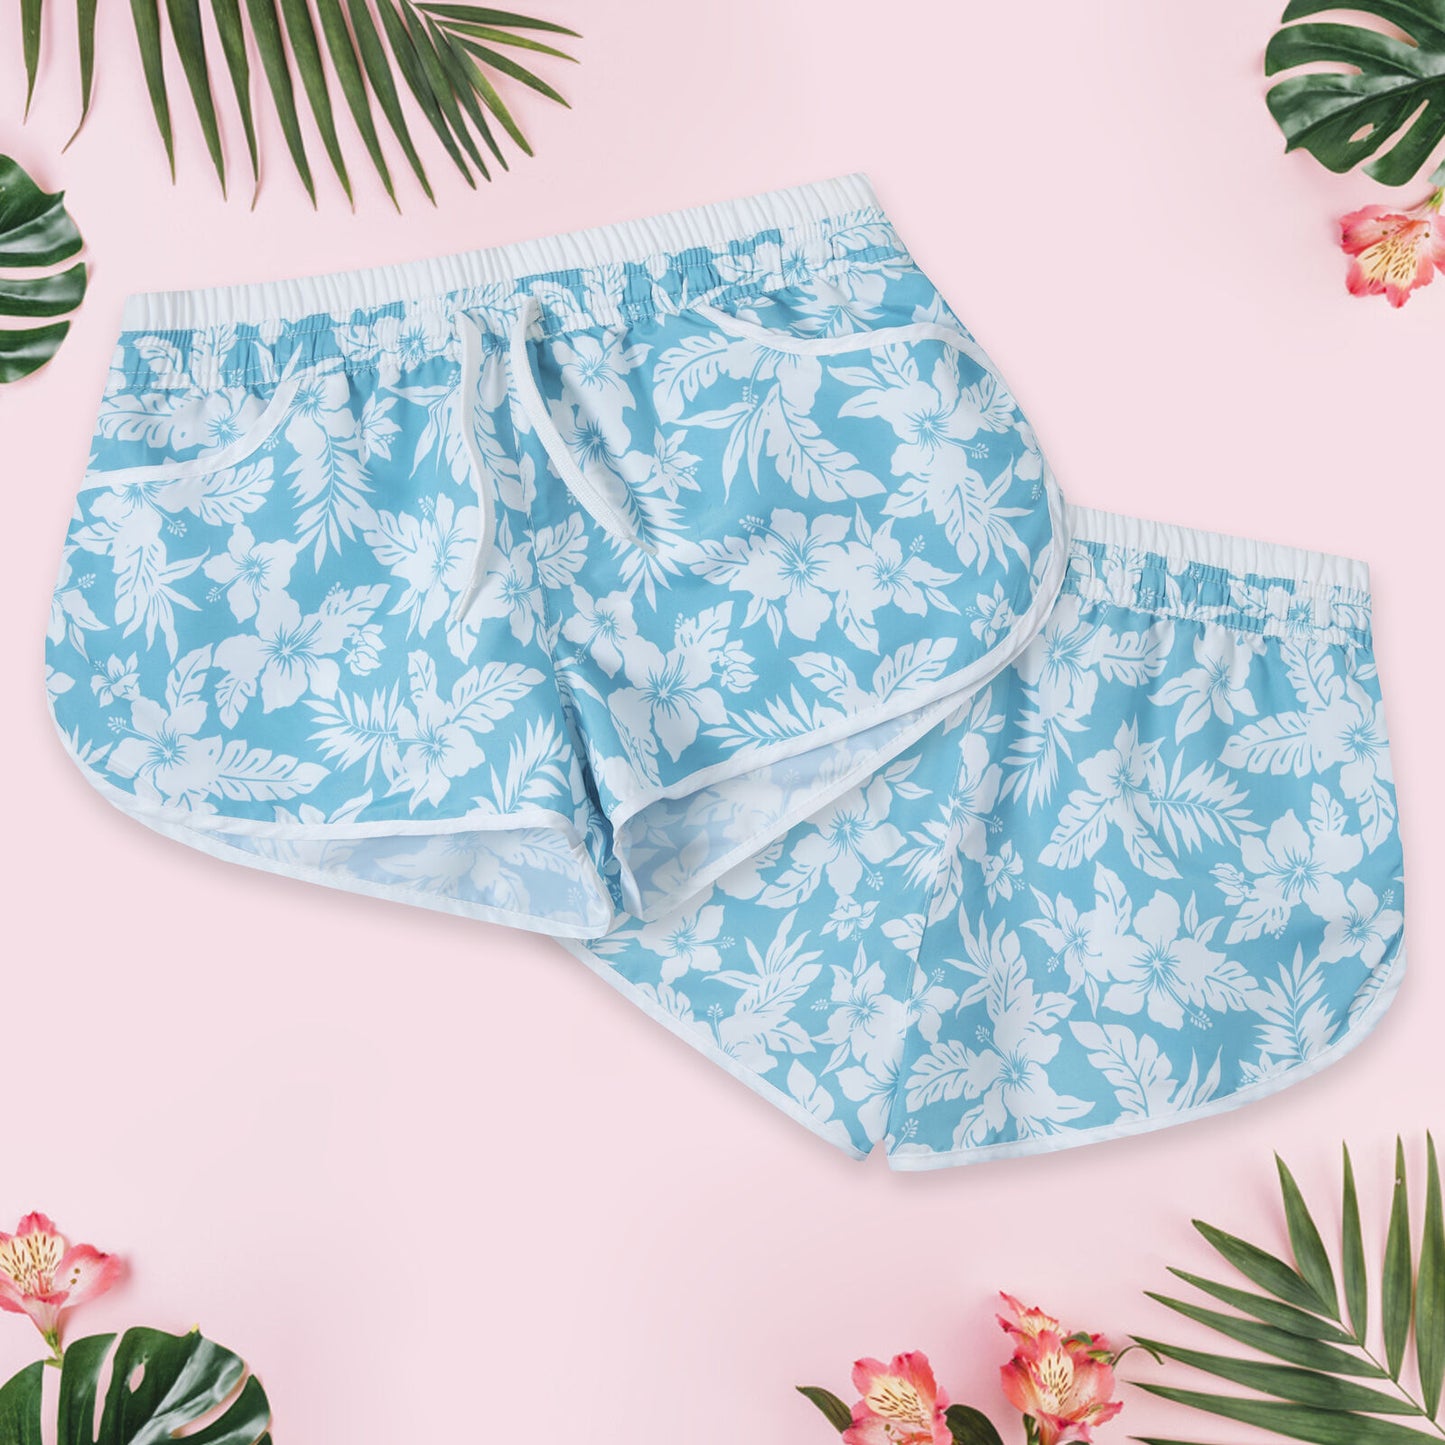 Ladies Floral Swim Shorts